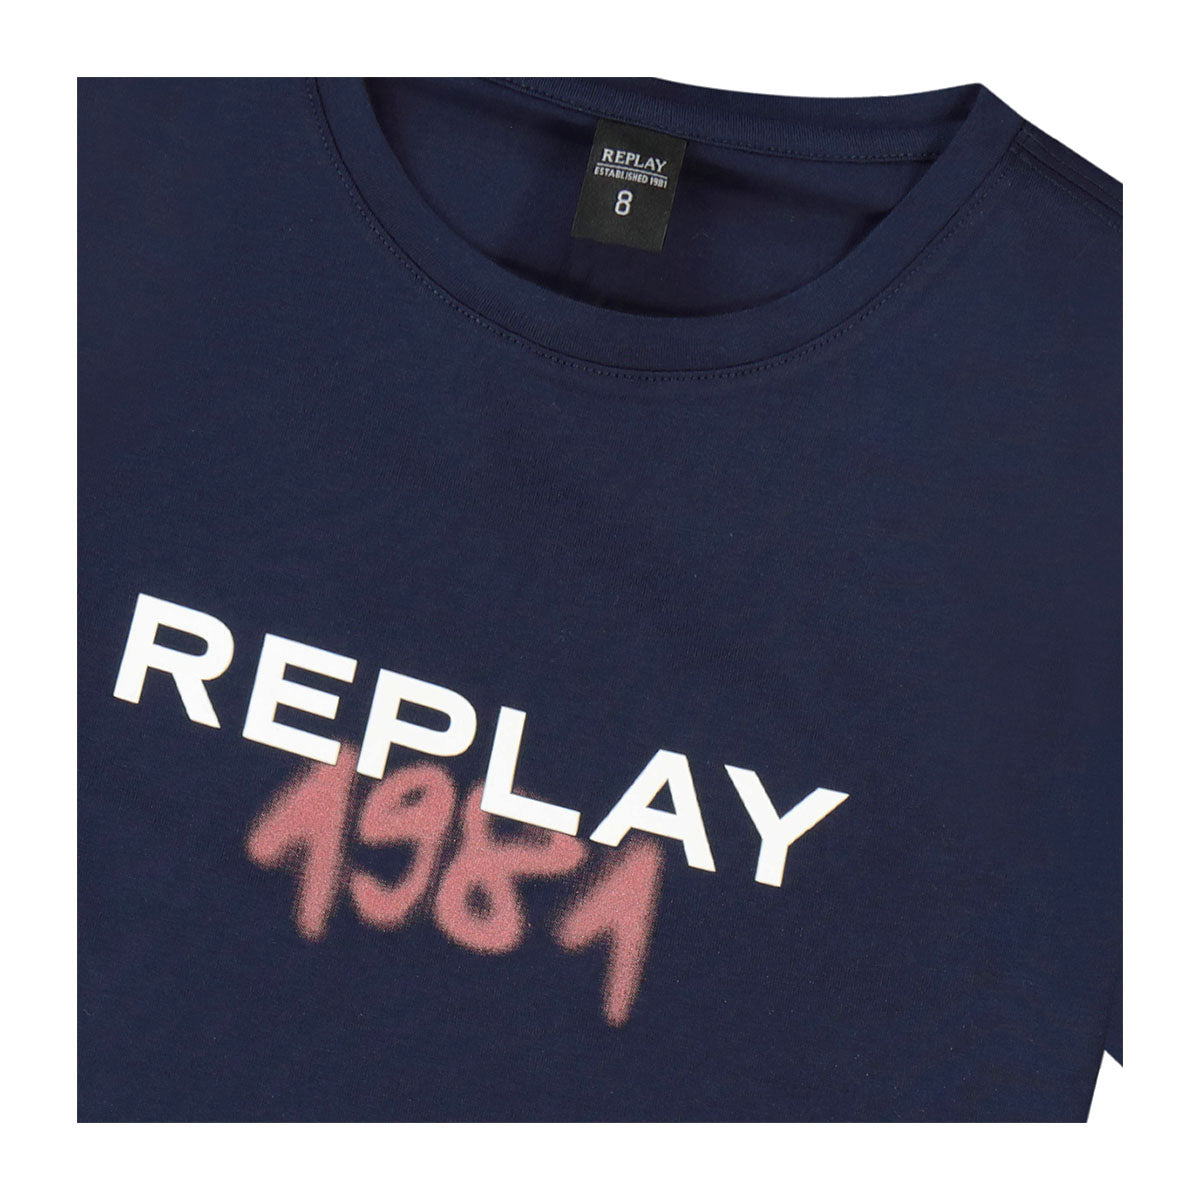 חולצת טי שרט REPLAY 1981 אוברסייז לילדים